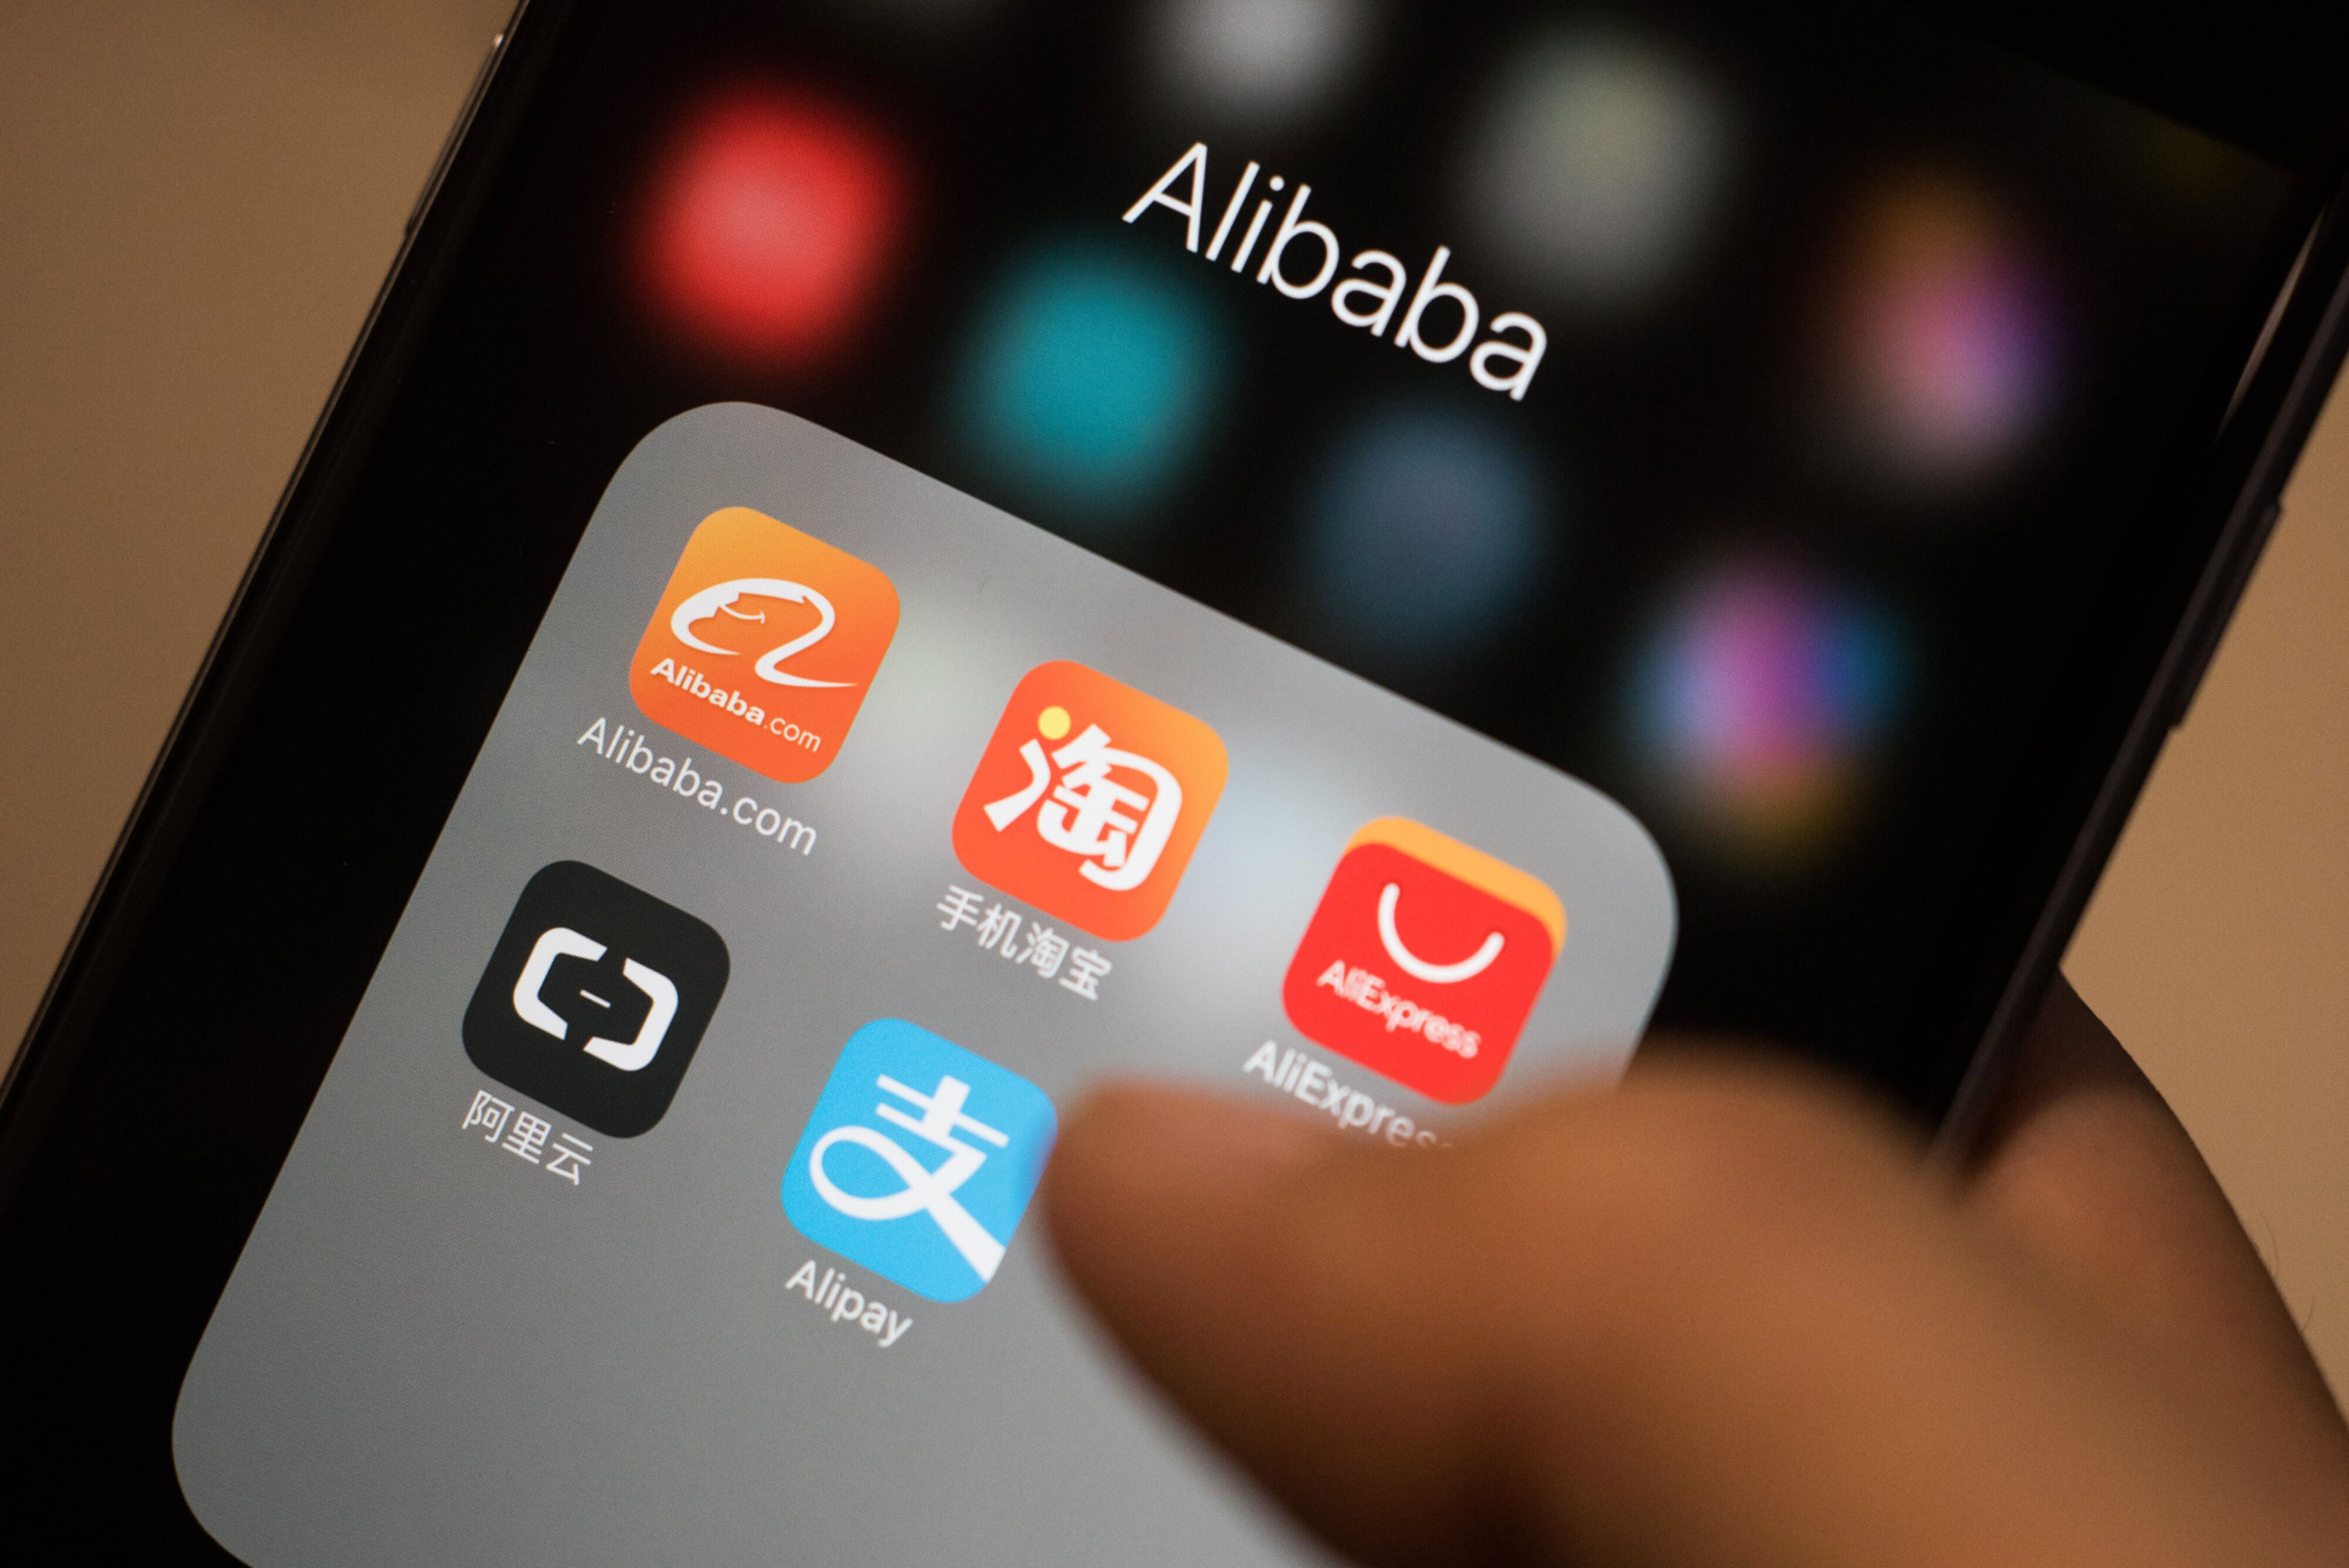 L’offerta pubblica iniziale di Alibaba per i prodotti alimentari è stata ritardata a causa…